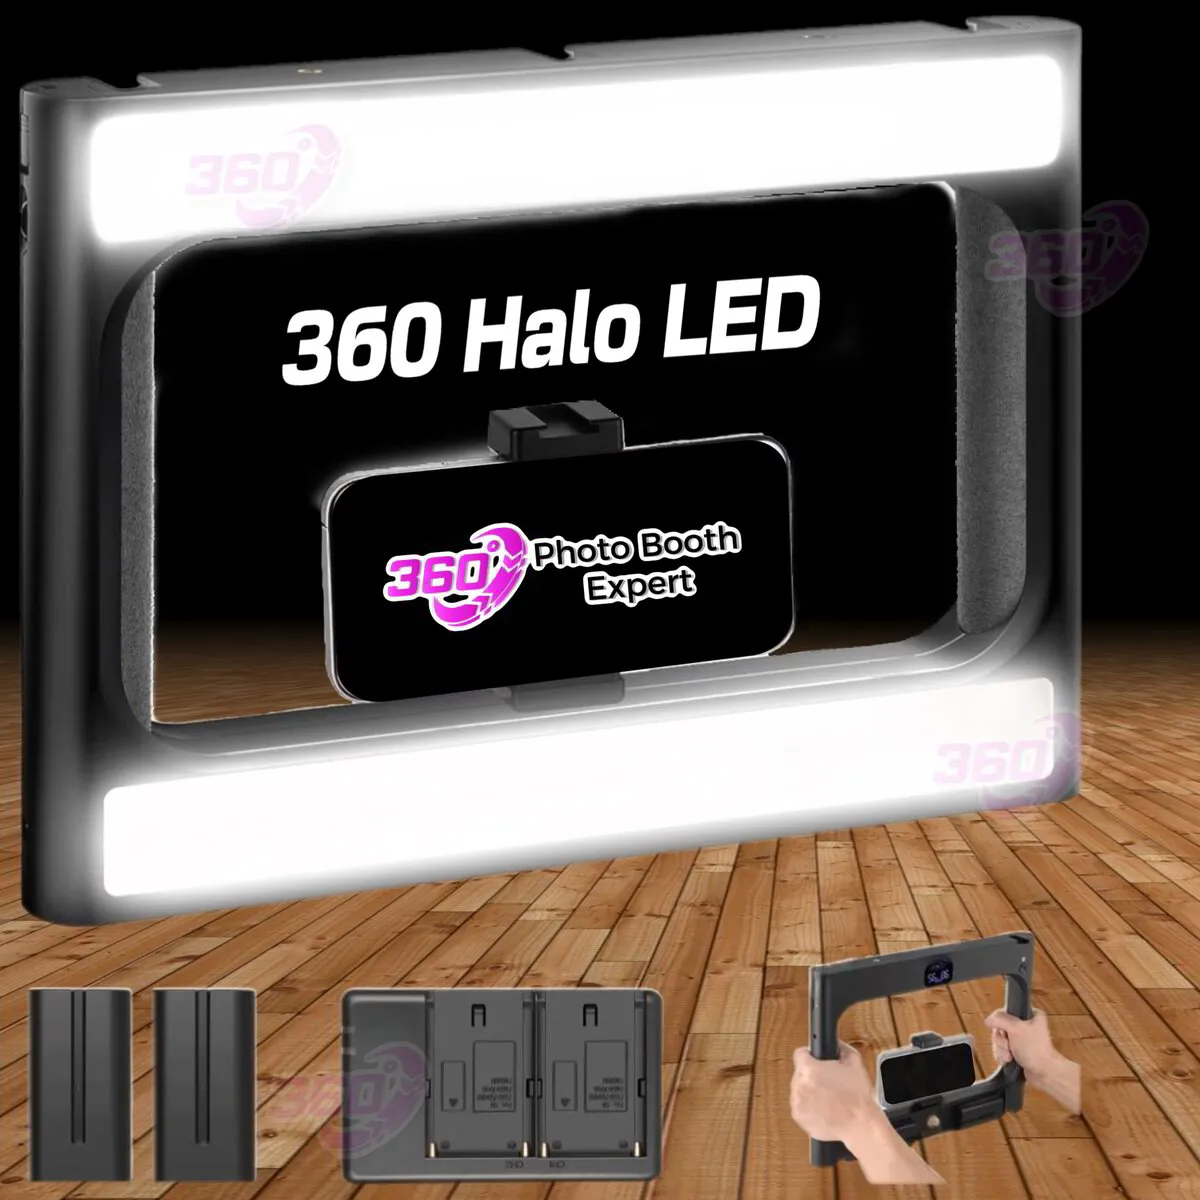 360 LED Halo